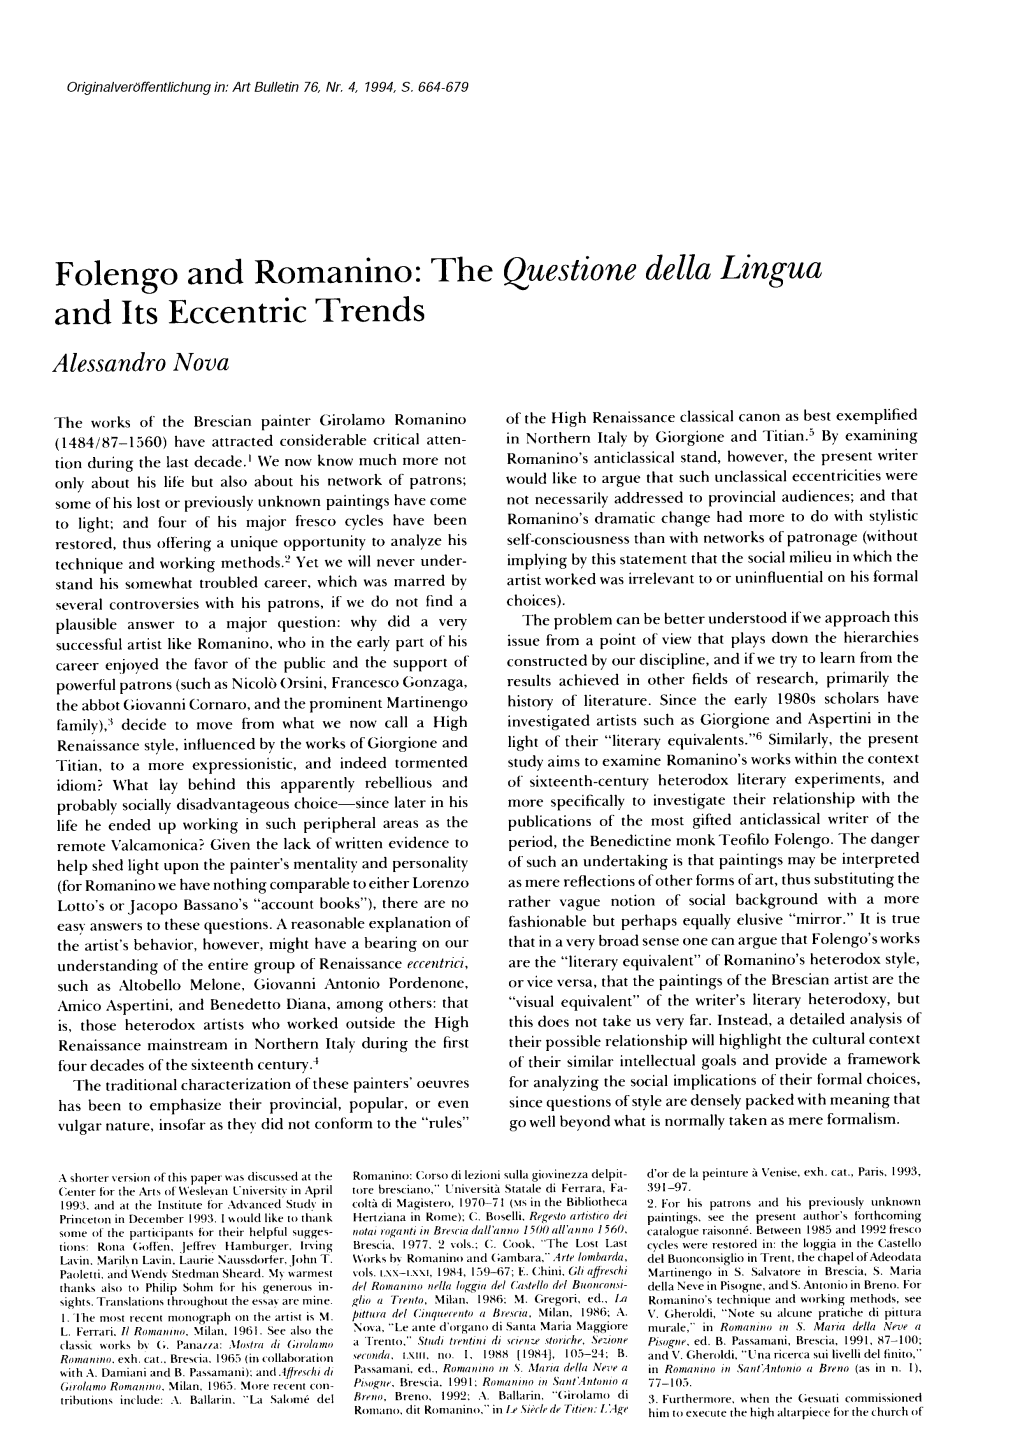 Folengo and Romanino: the Questione Della Lingua and Its Eccentric Trends